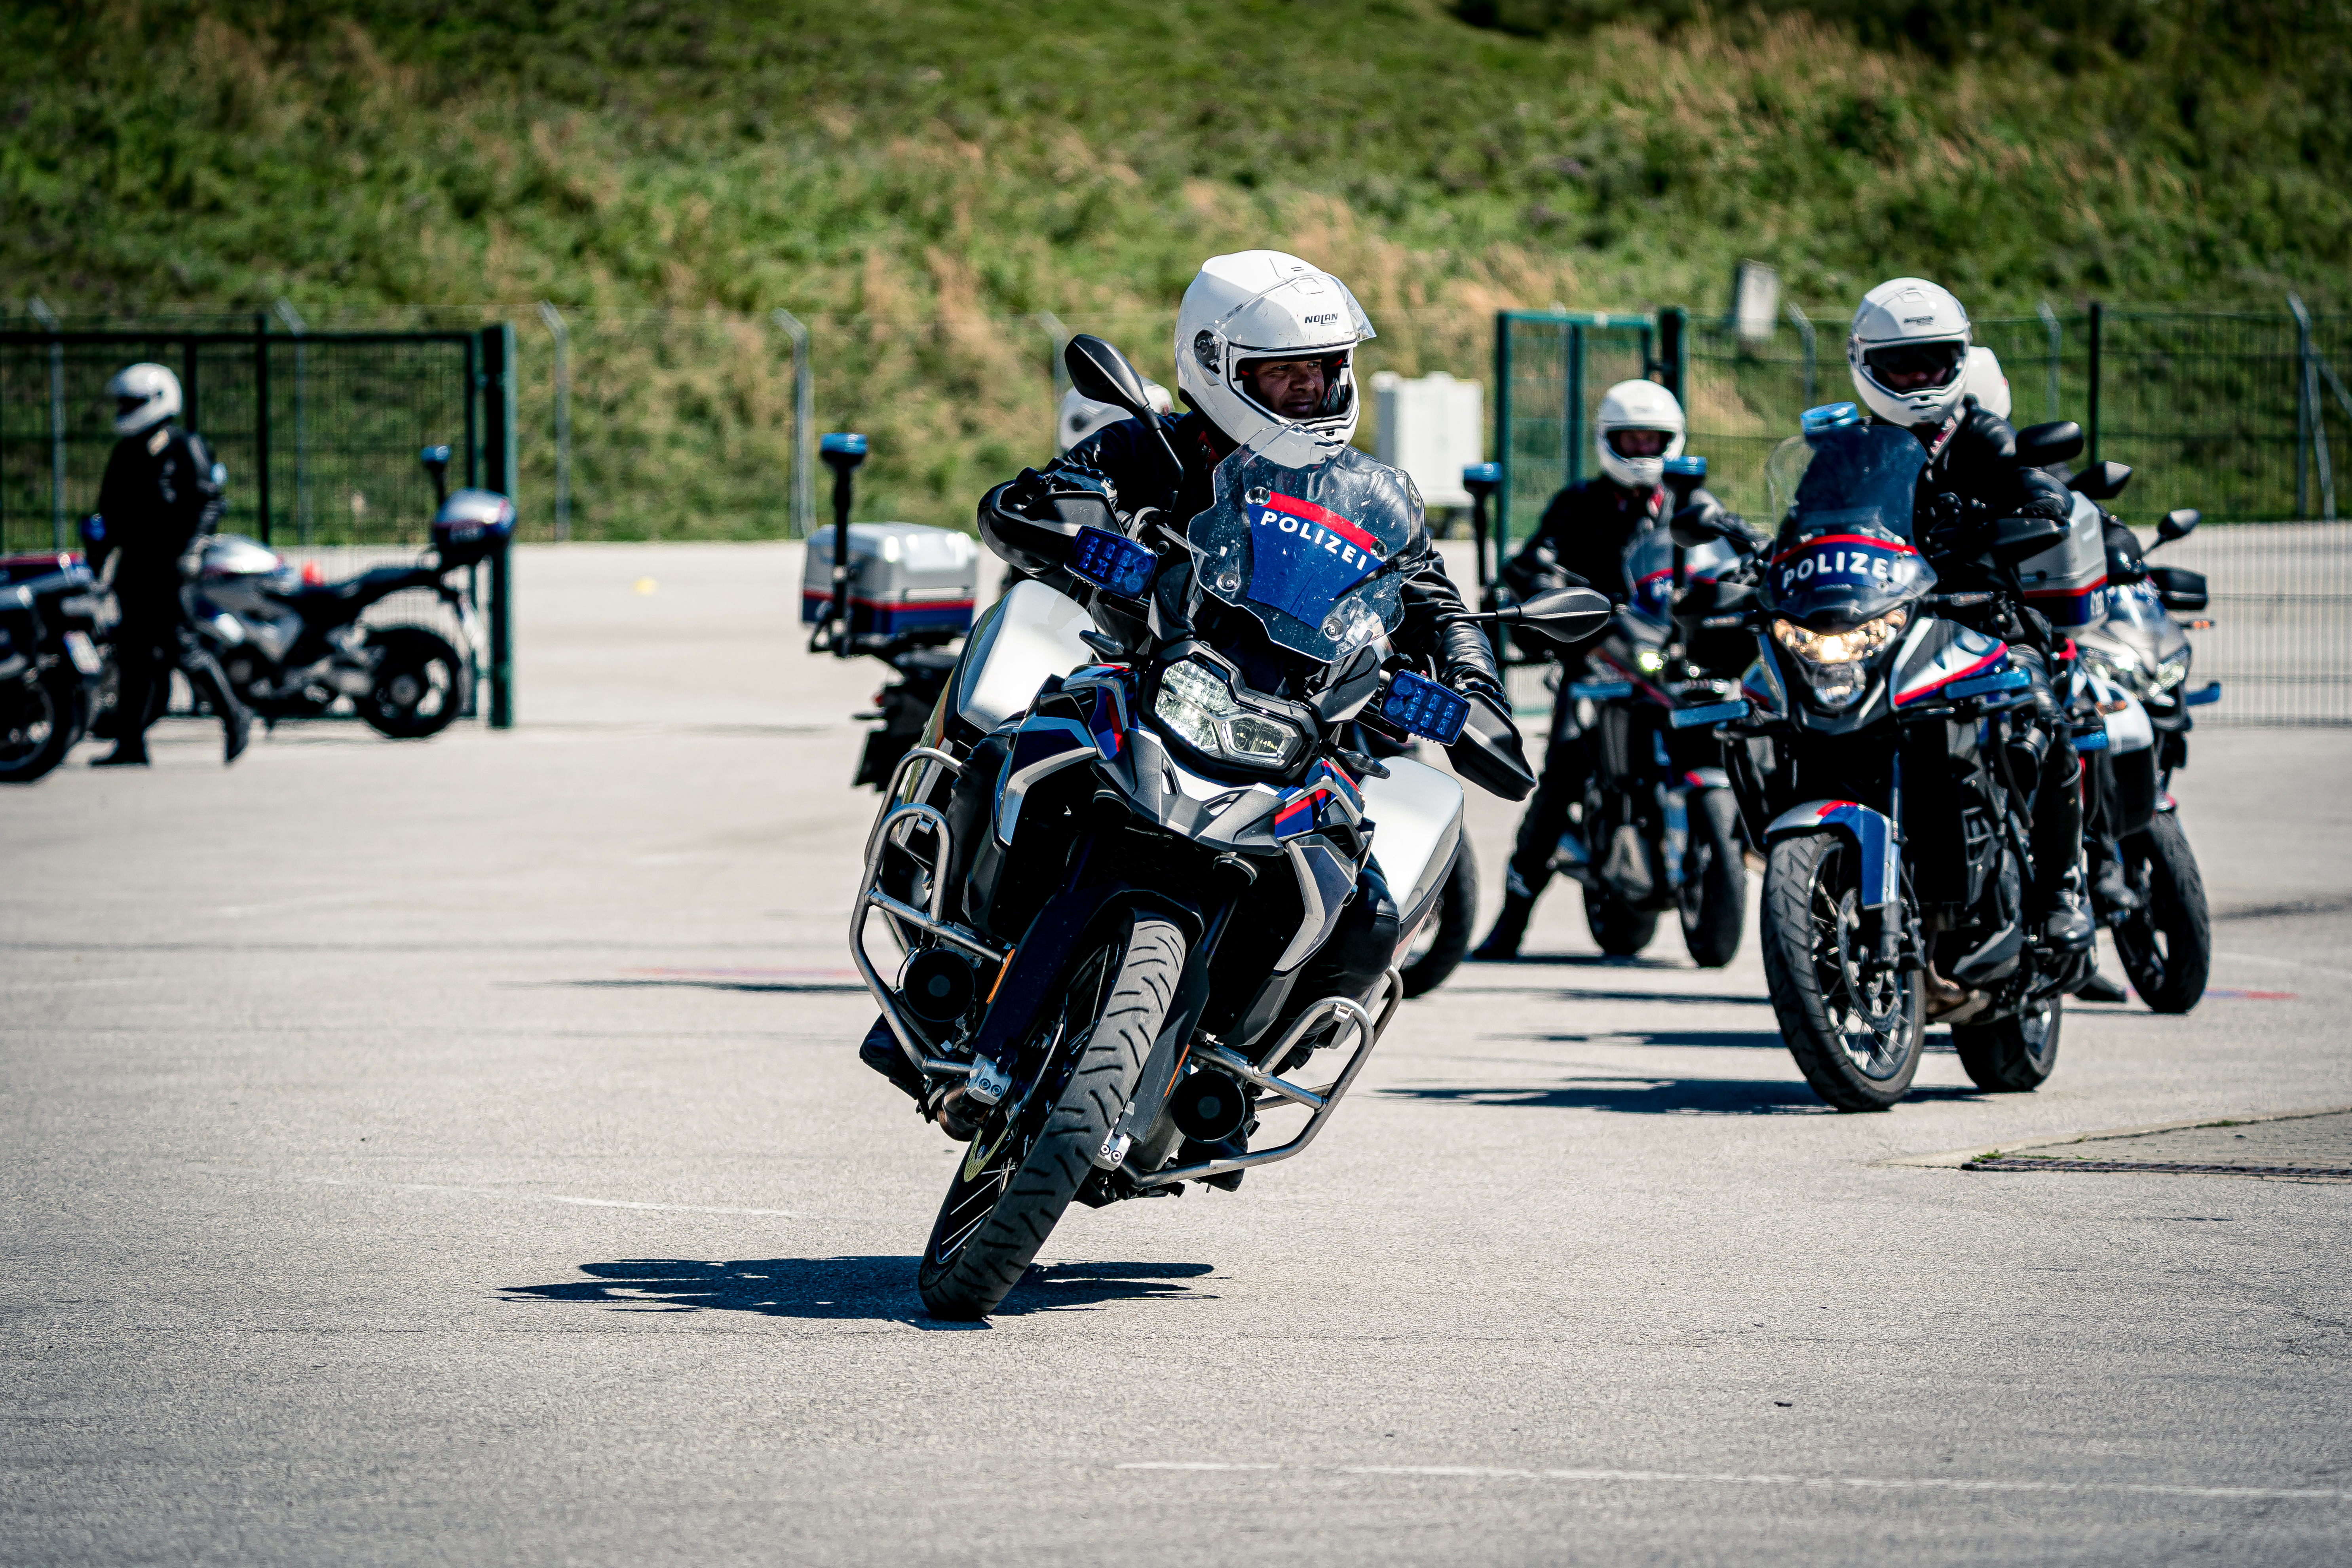 Polizei motorrad training manuelmackinger igms 08584